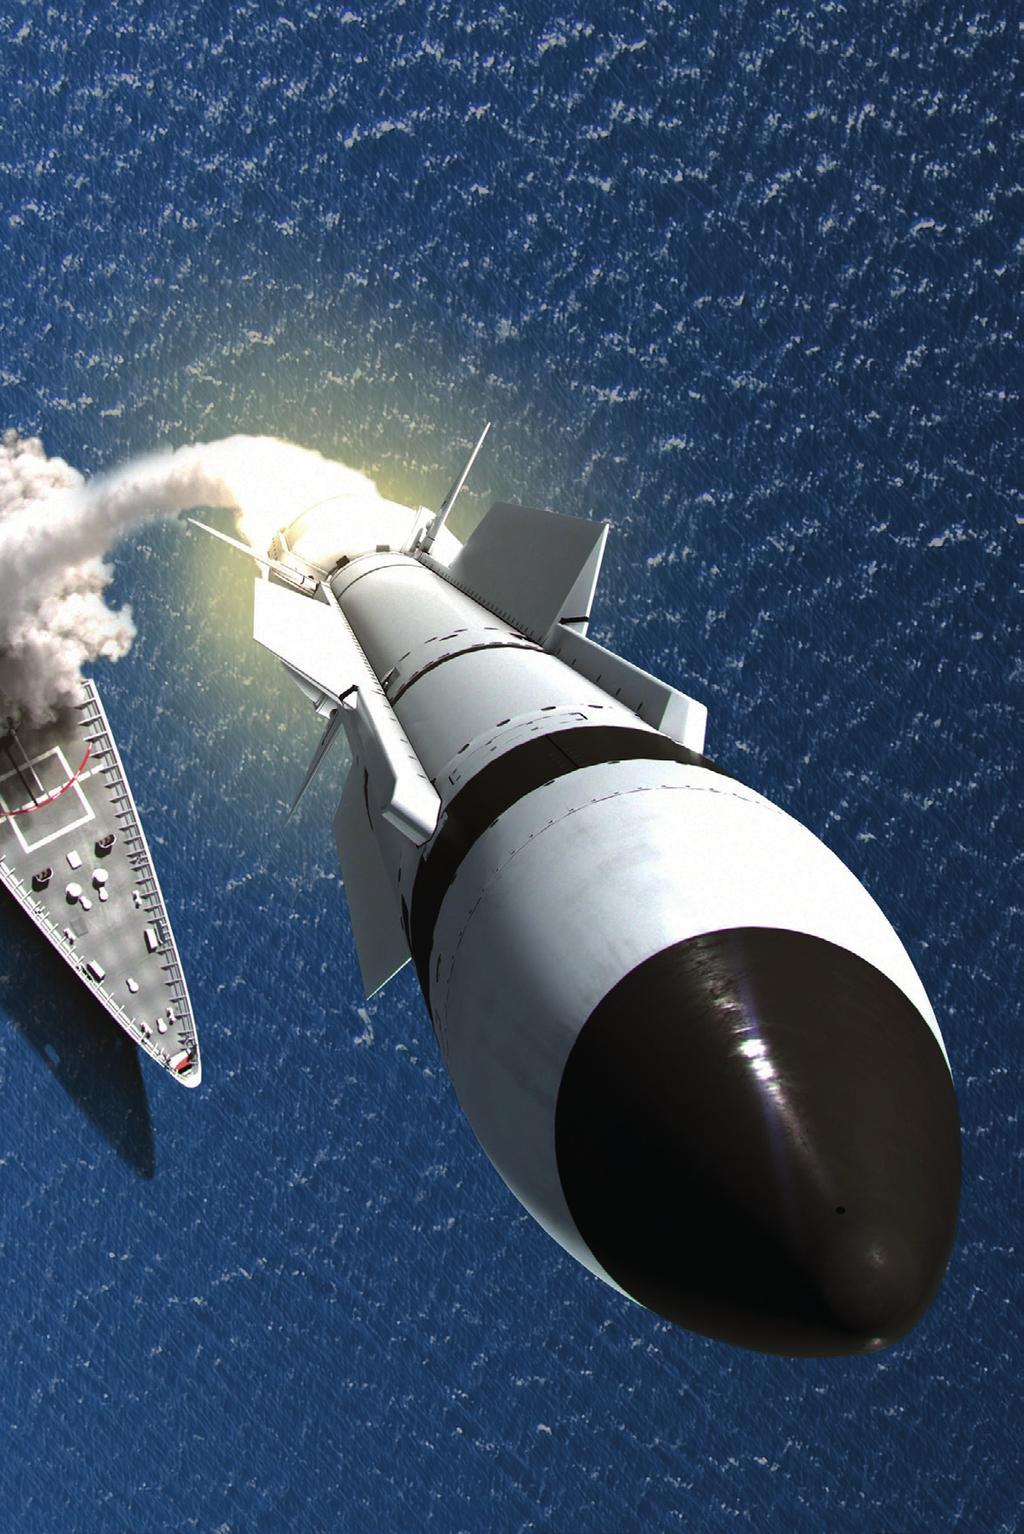 Pokazany na ilustracji Standard Missile-3 to jedyny na świecie pocisk do niszczenia rakiet balistycznych, który można rozmieścić zarówno